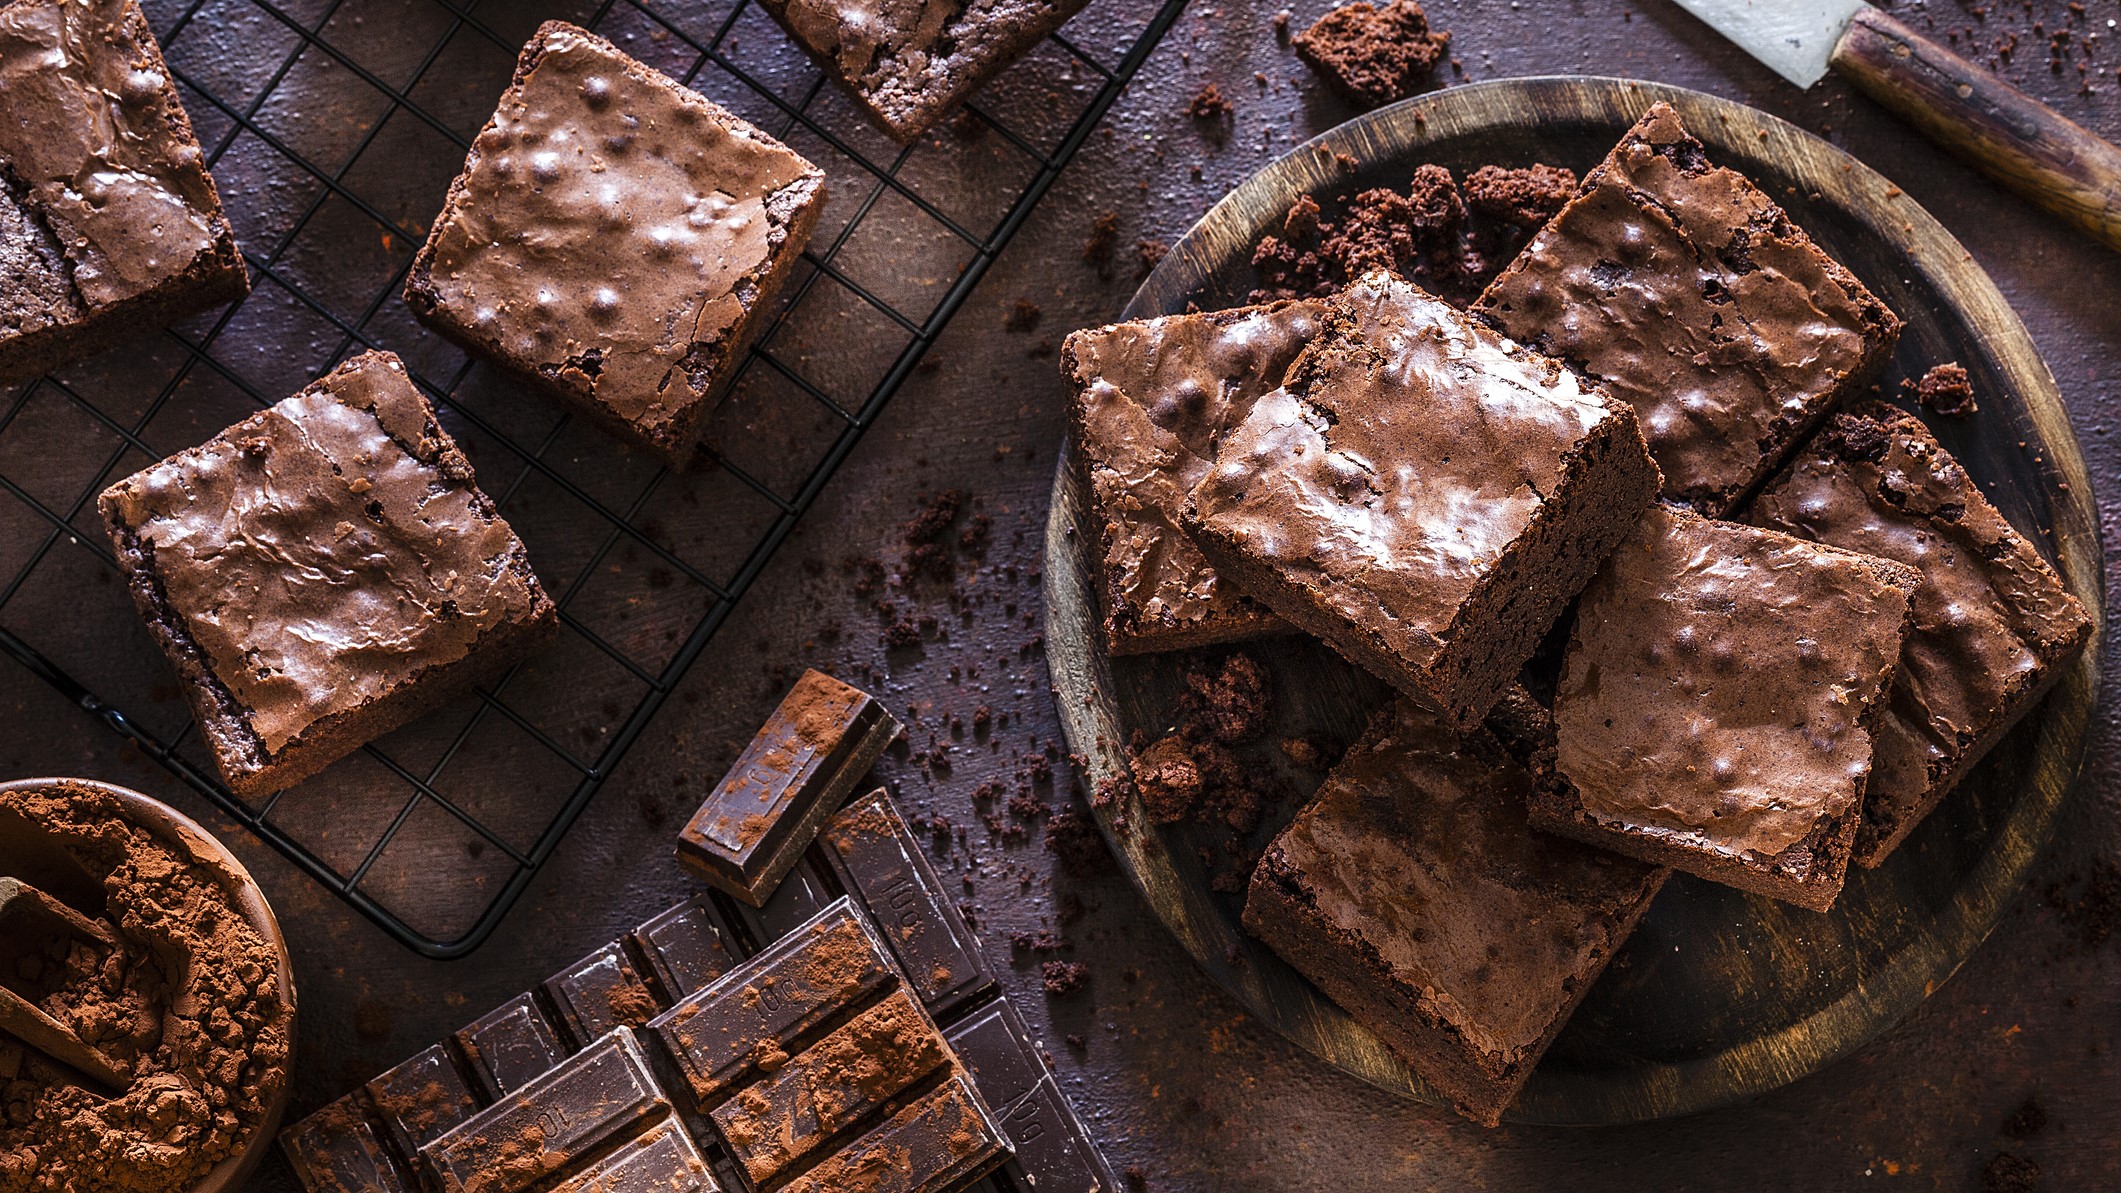 Frisch gebackene Brownies in Nahaufnahme mit sichtbaren Schokoladenstückchen und Kakao bestäubt.